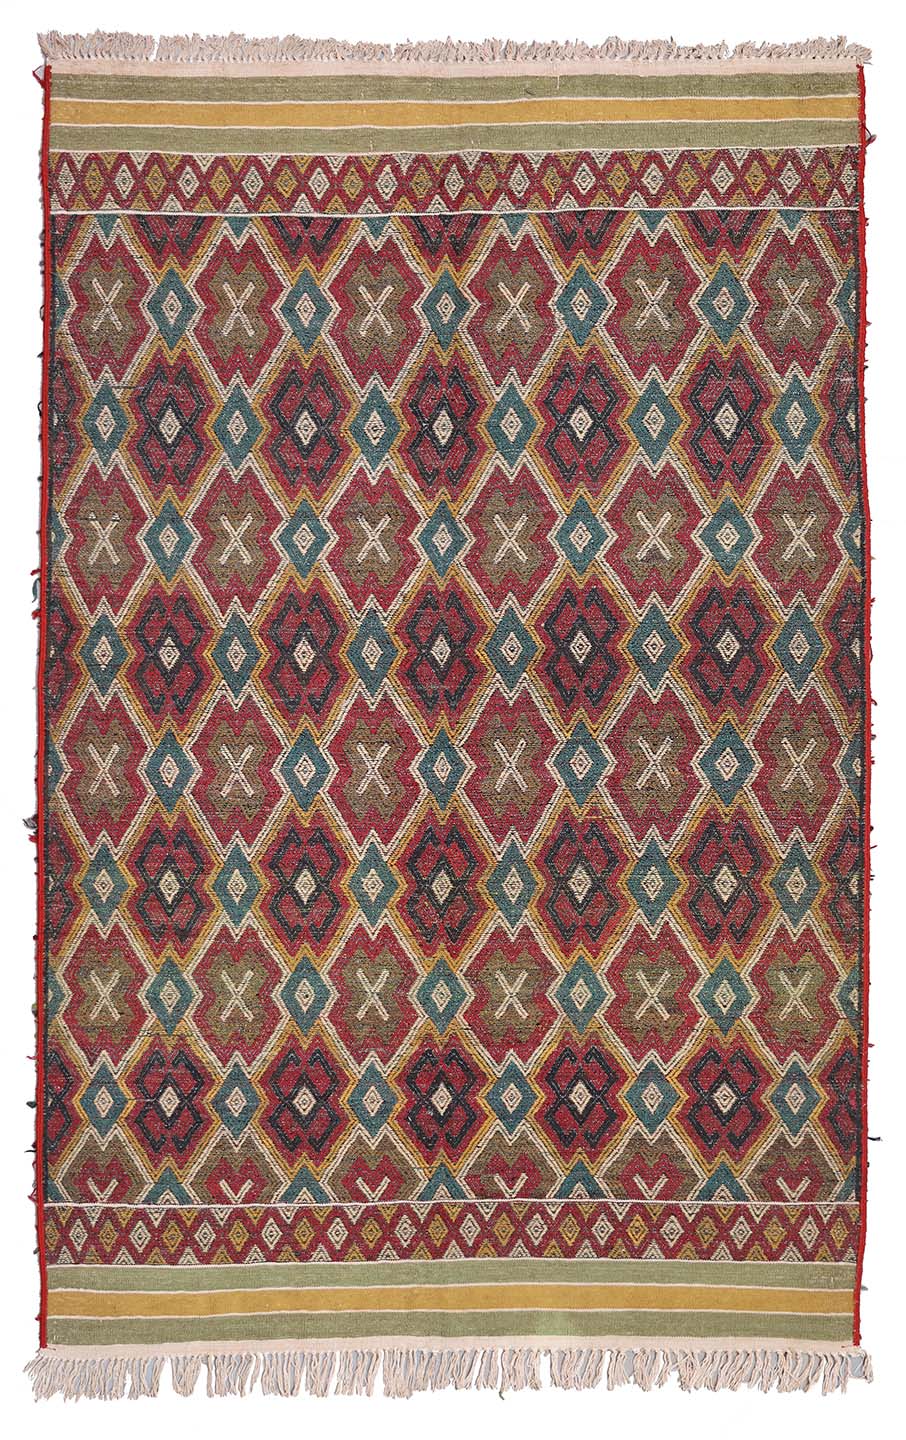 7'x10' Afghan Turkman Colorful Soumak Kilim